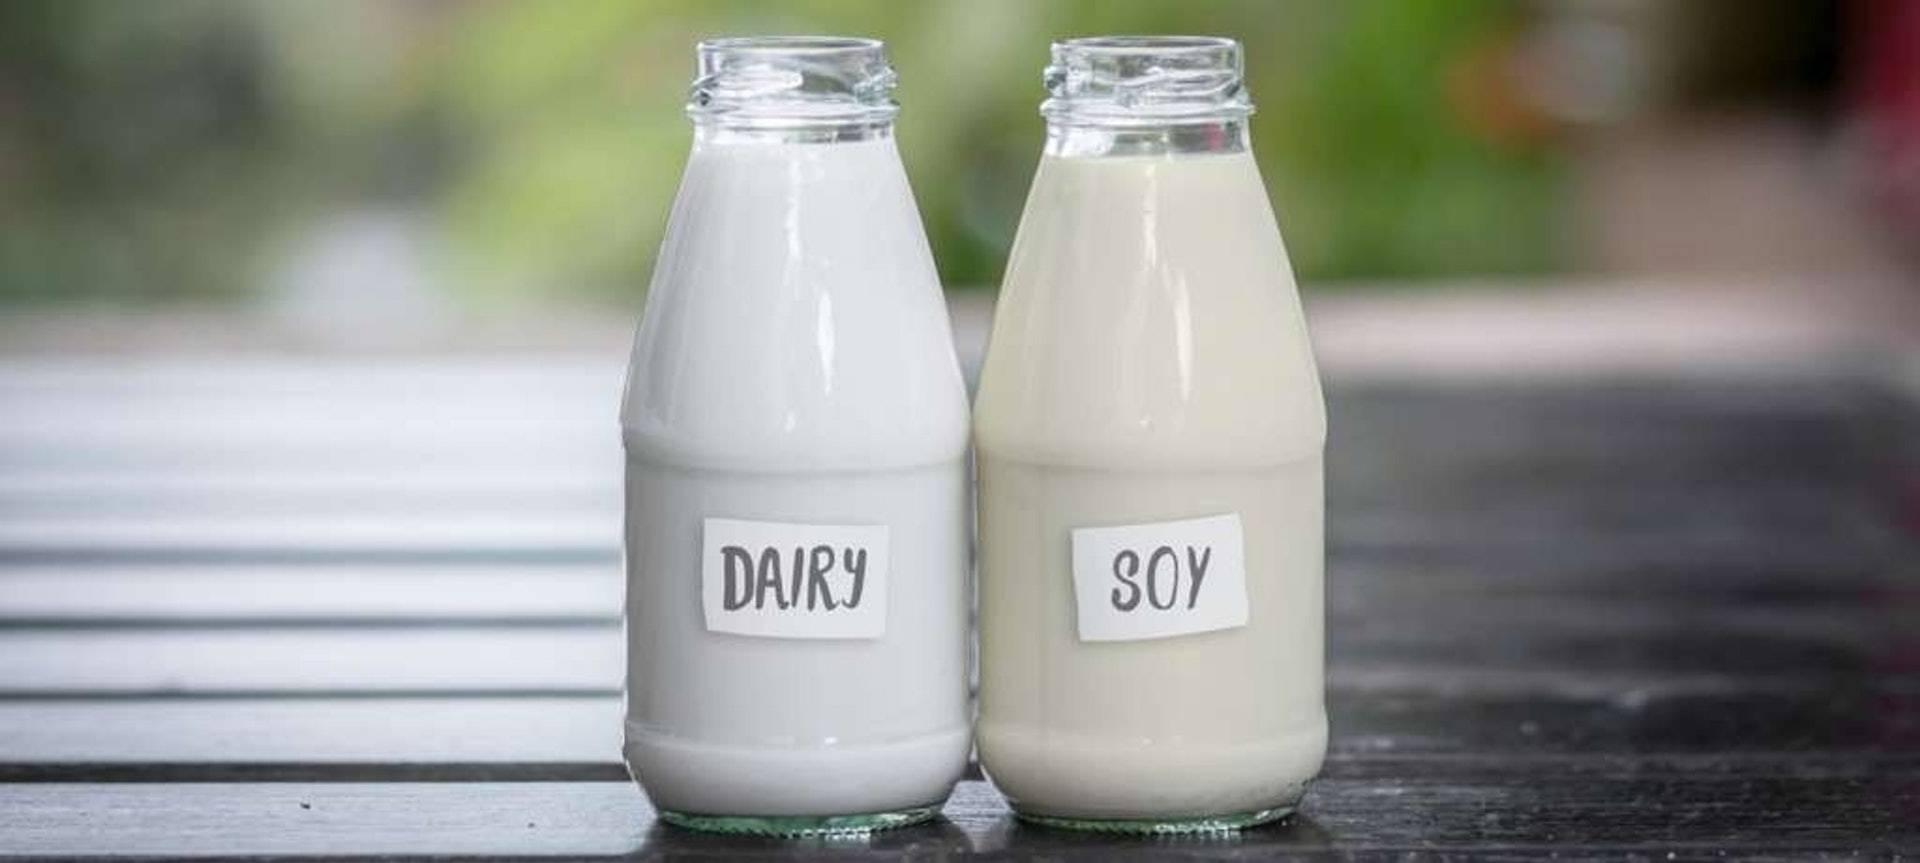  豆浆、牛奶和豆奶，哪个营养价值更高？想减肥，早上喝哪个更好？  豆奶和豆浆哪个有营养